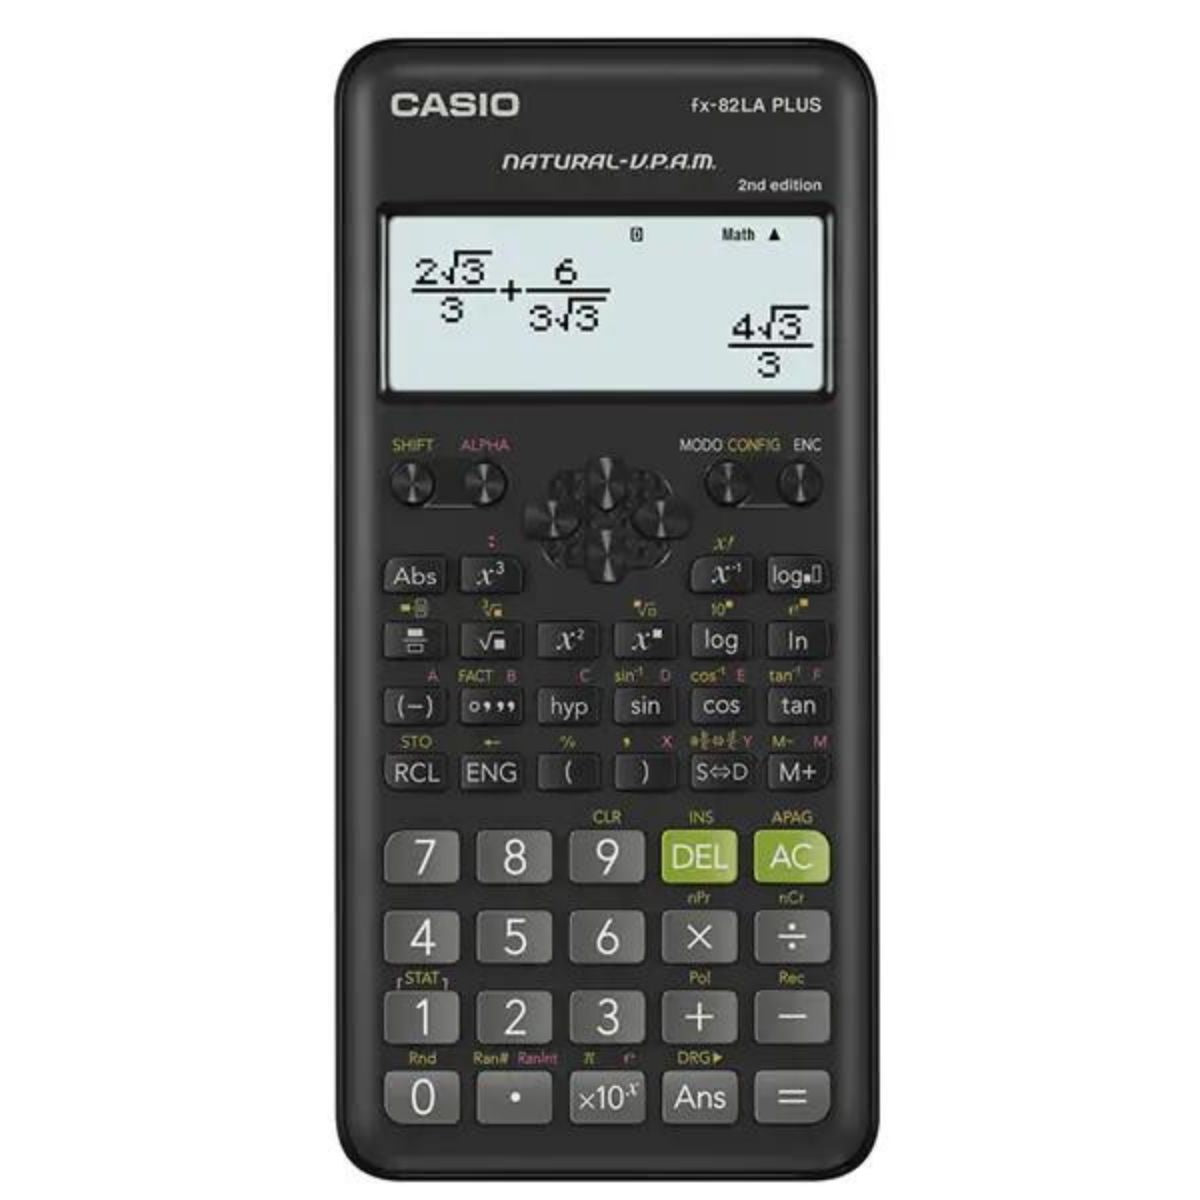 Calculadora Científica Casio Fx-82la Plus2 252 Funciones Elegir Color